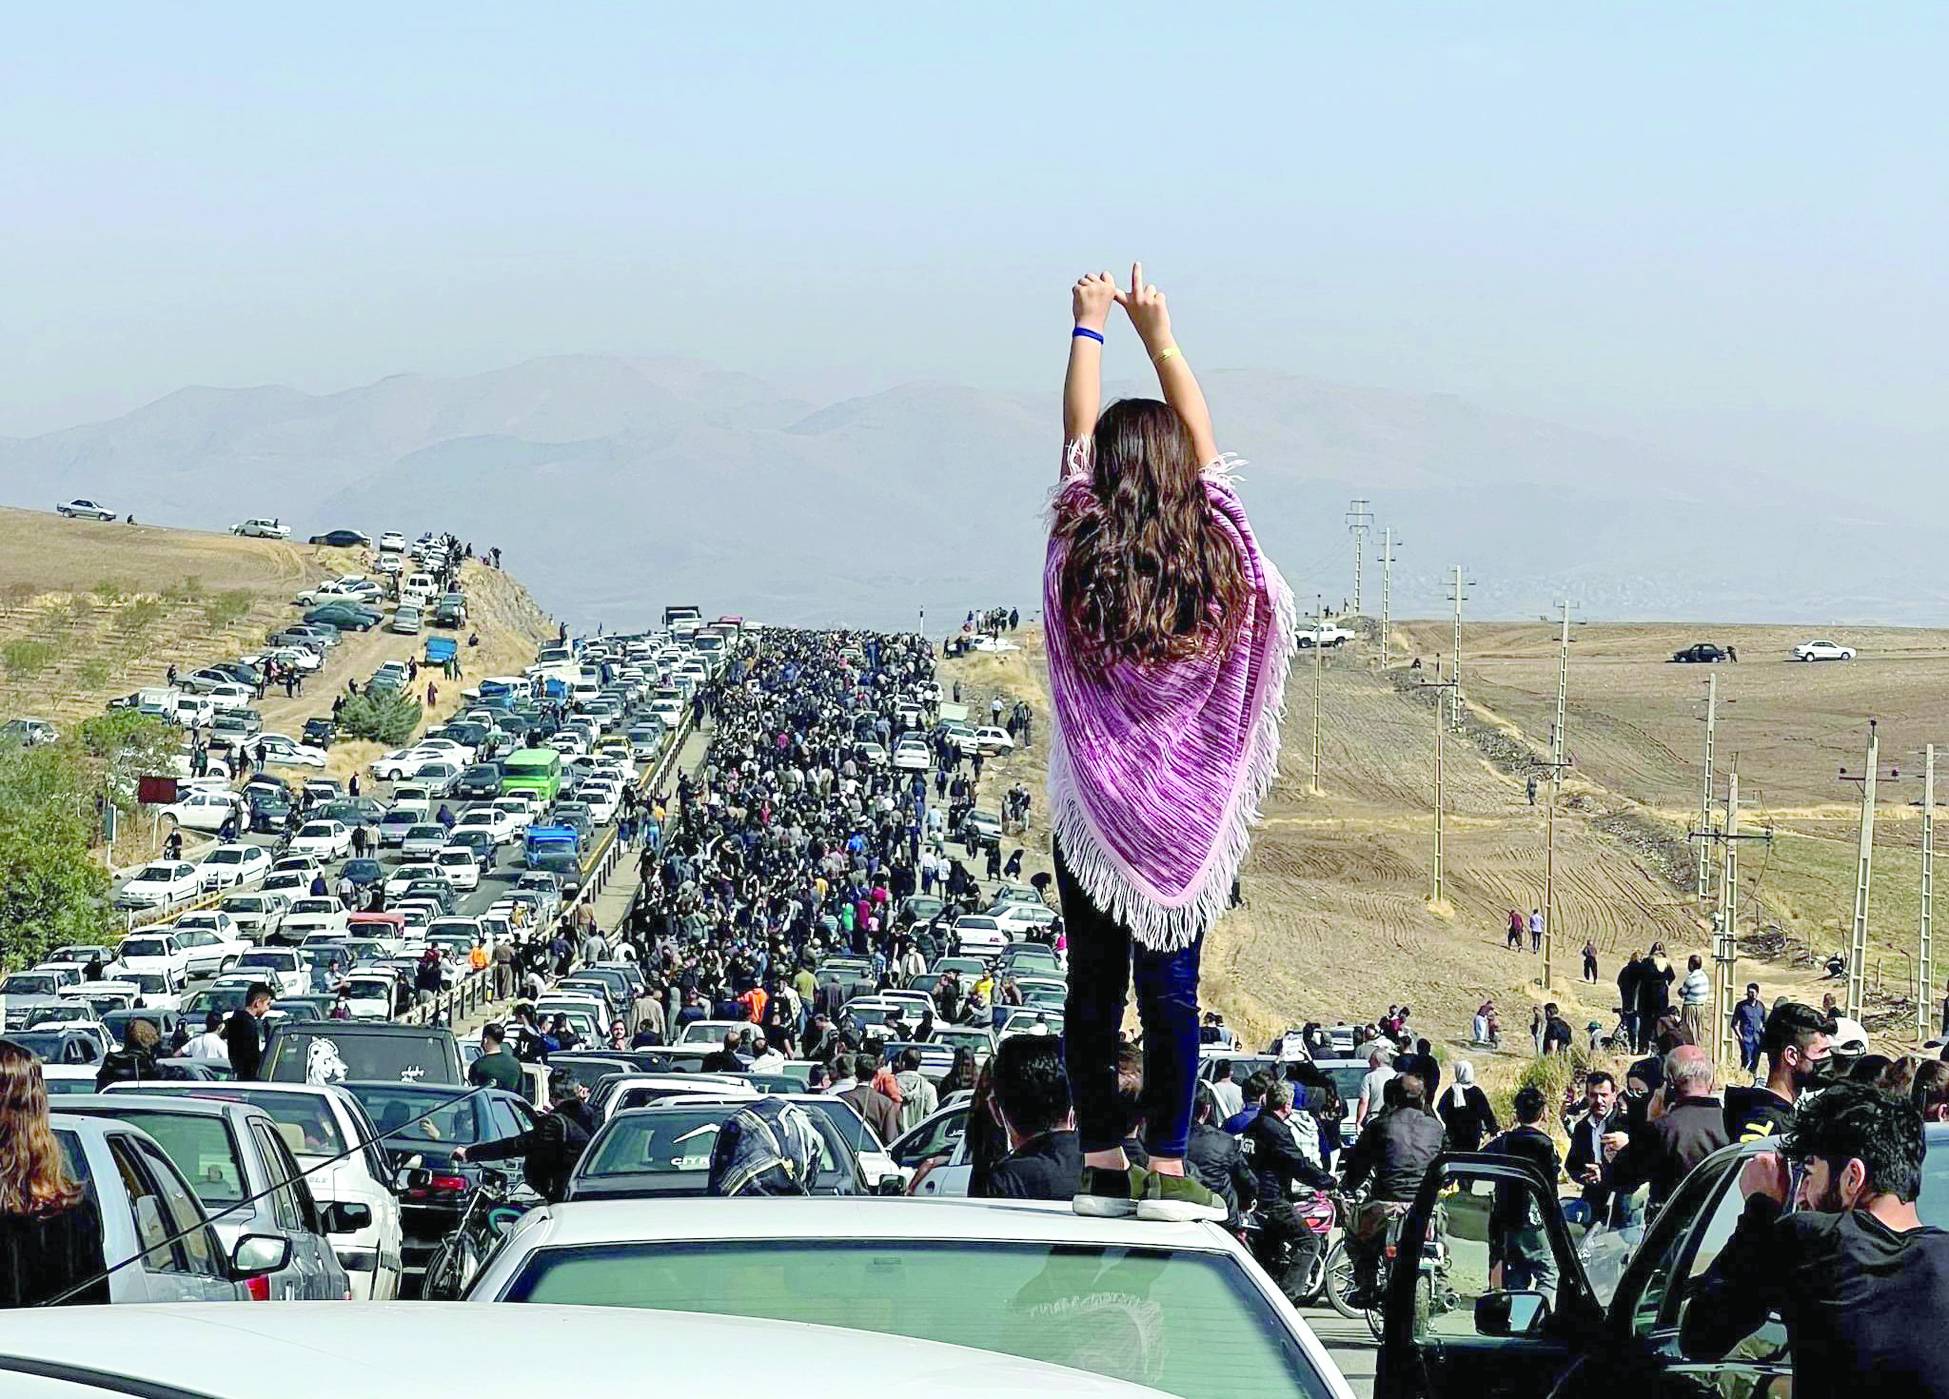 آلاف شاركوا في مراسم أربعين مهسا أميني يشقون طريقهم نحو مقبرة في سقز الكردية غرب إيران في أكتوبر 2022 (أ.ف.ب)